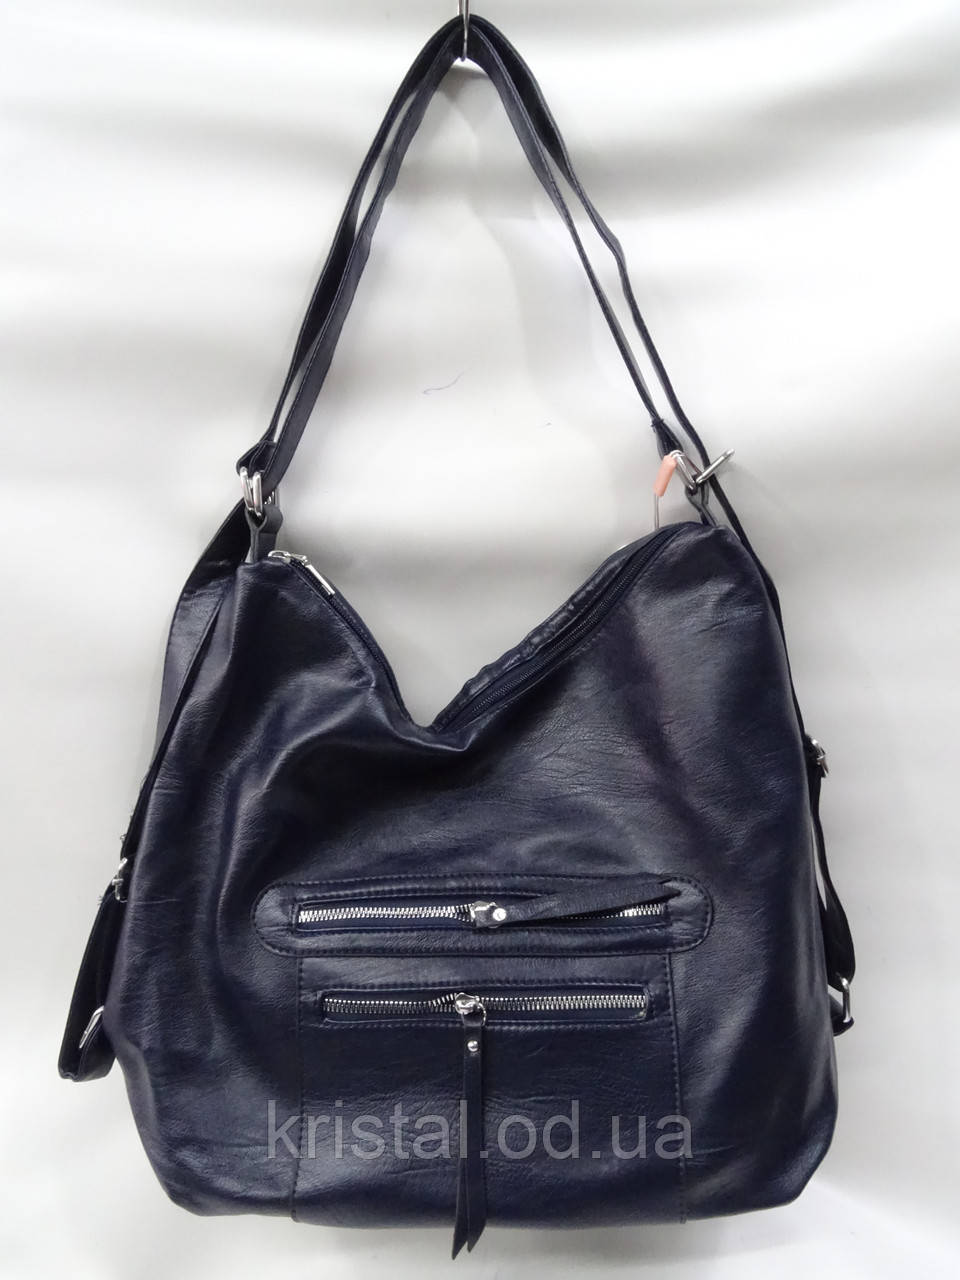 Жіноча сумка-рюкзак оптом 33*32 см. серії "Новинка" No17233